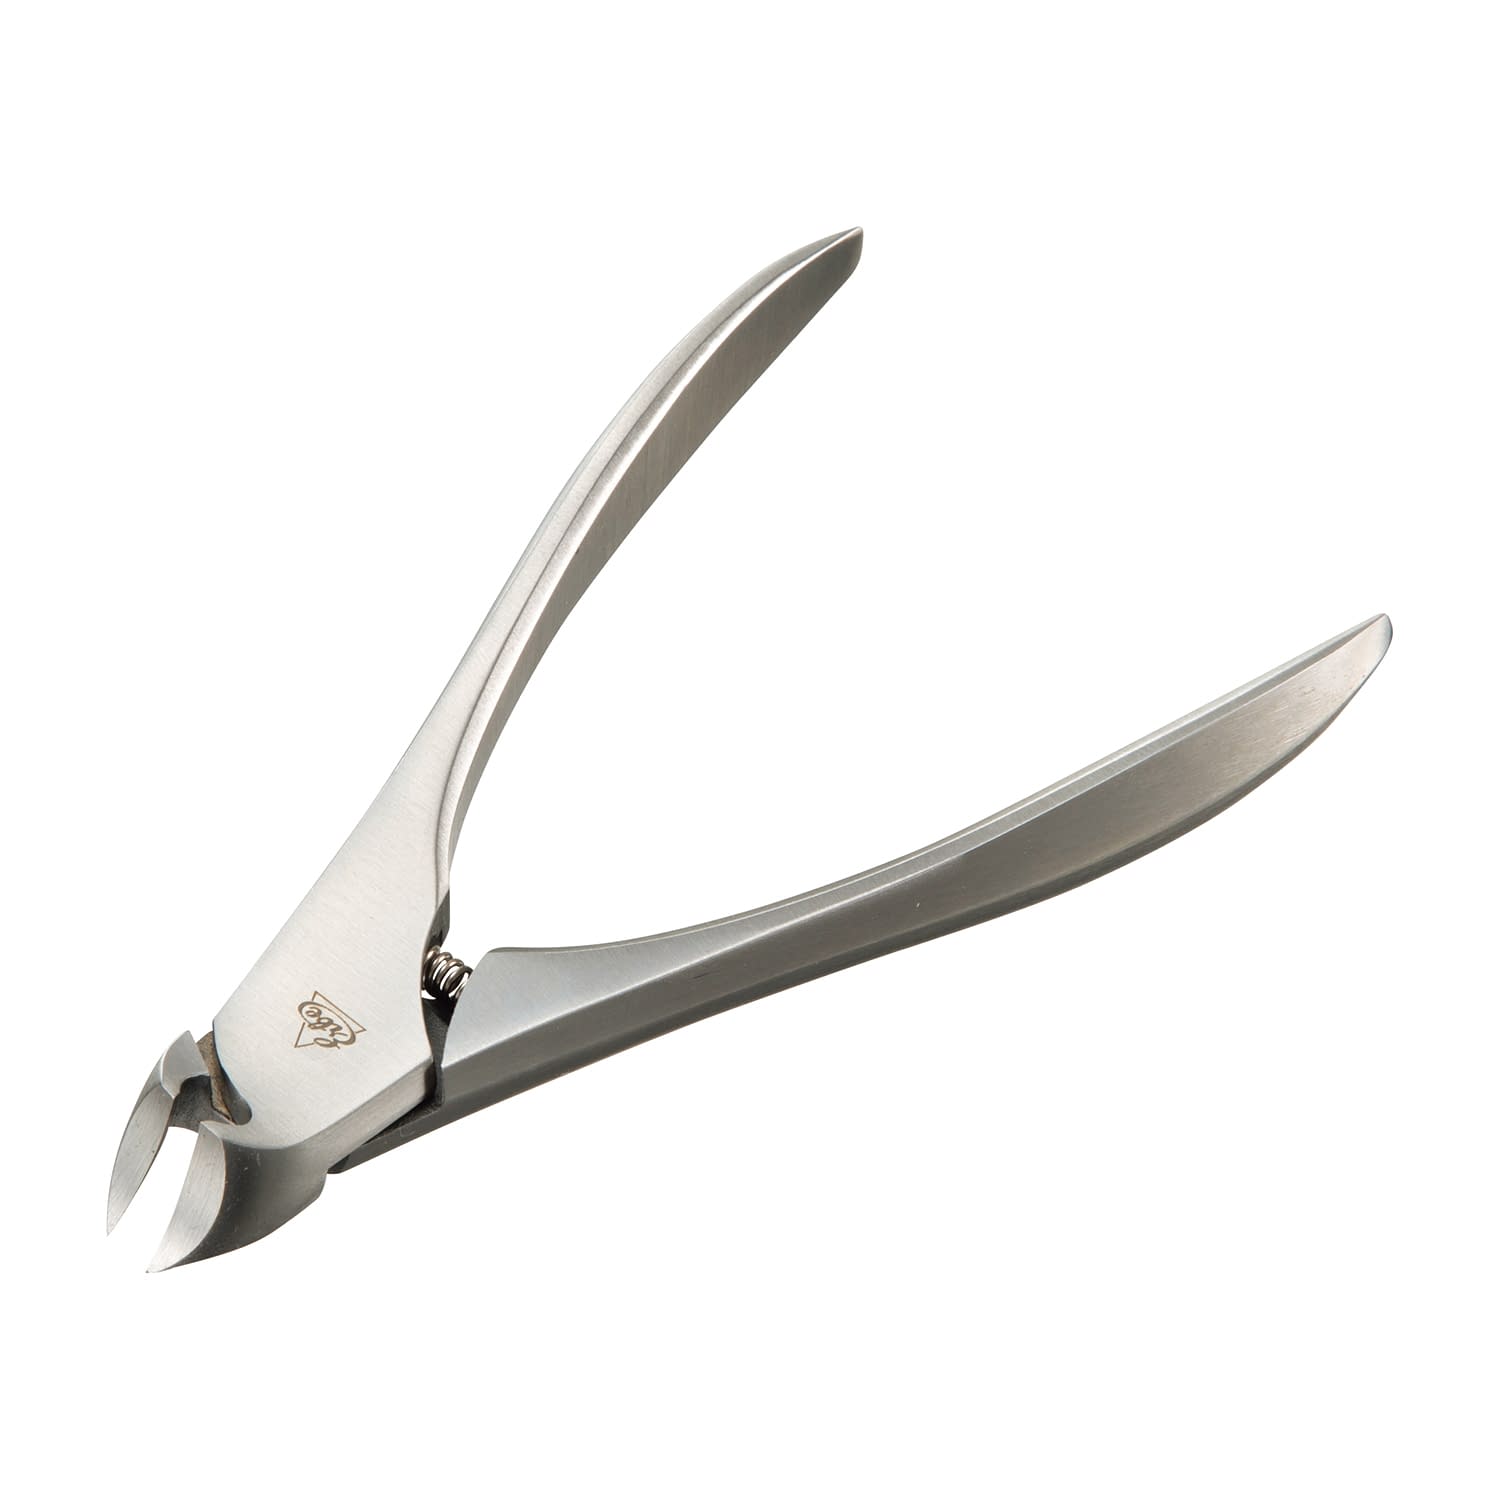 ニッパー爪切り ベッカーベッカー社91797(シルバー)●短く硬い爪や足の爪を切るのに適したニッパーです。●刃先が緩やかなカーブになっているため、きれいな形に整えることができます。